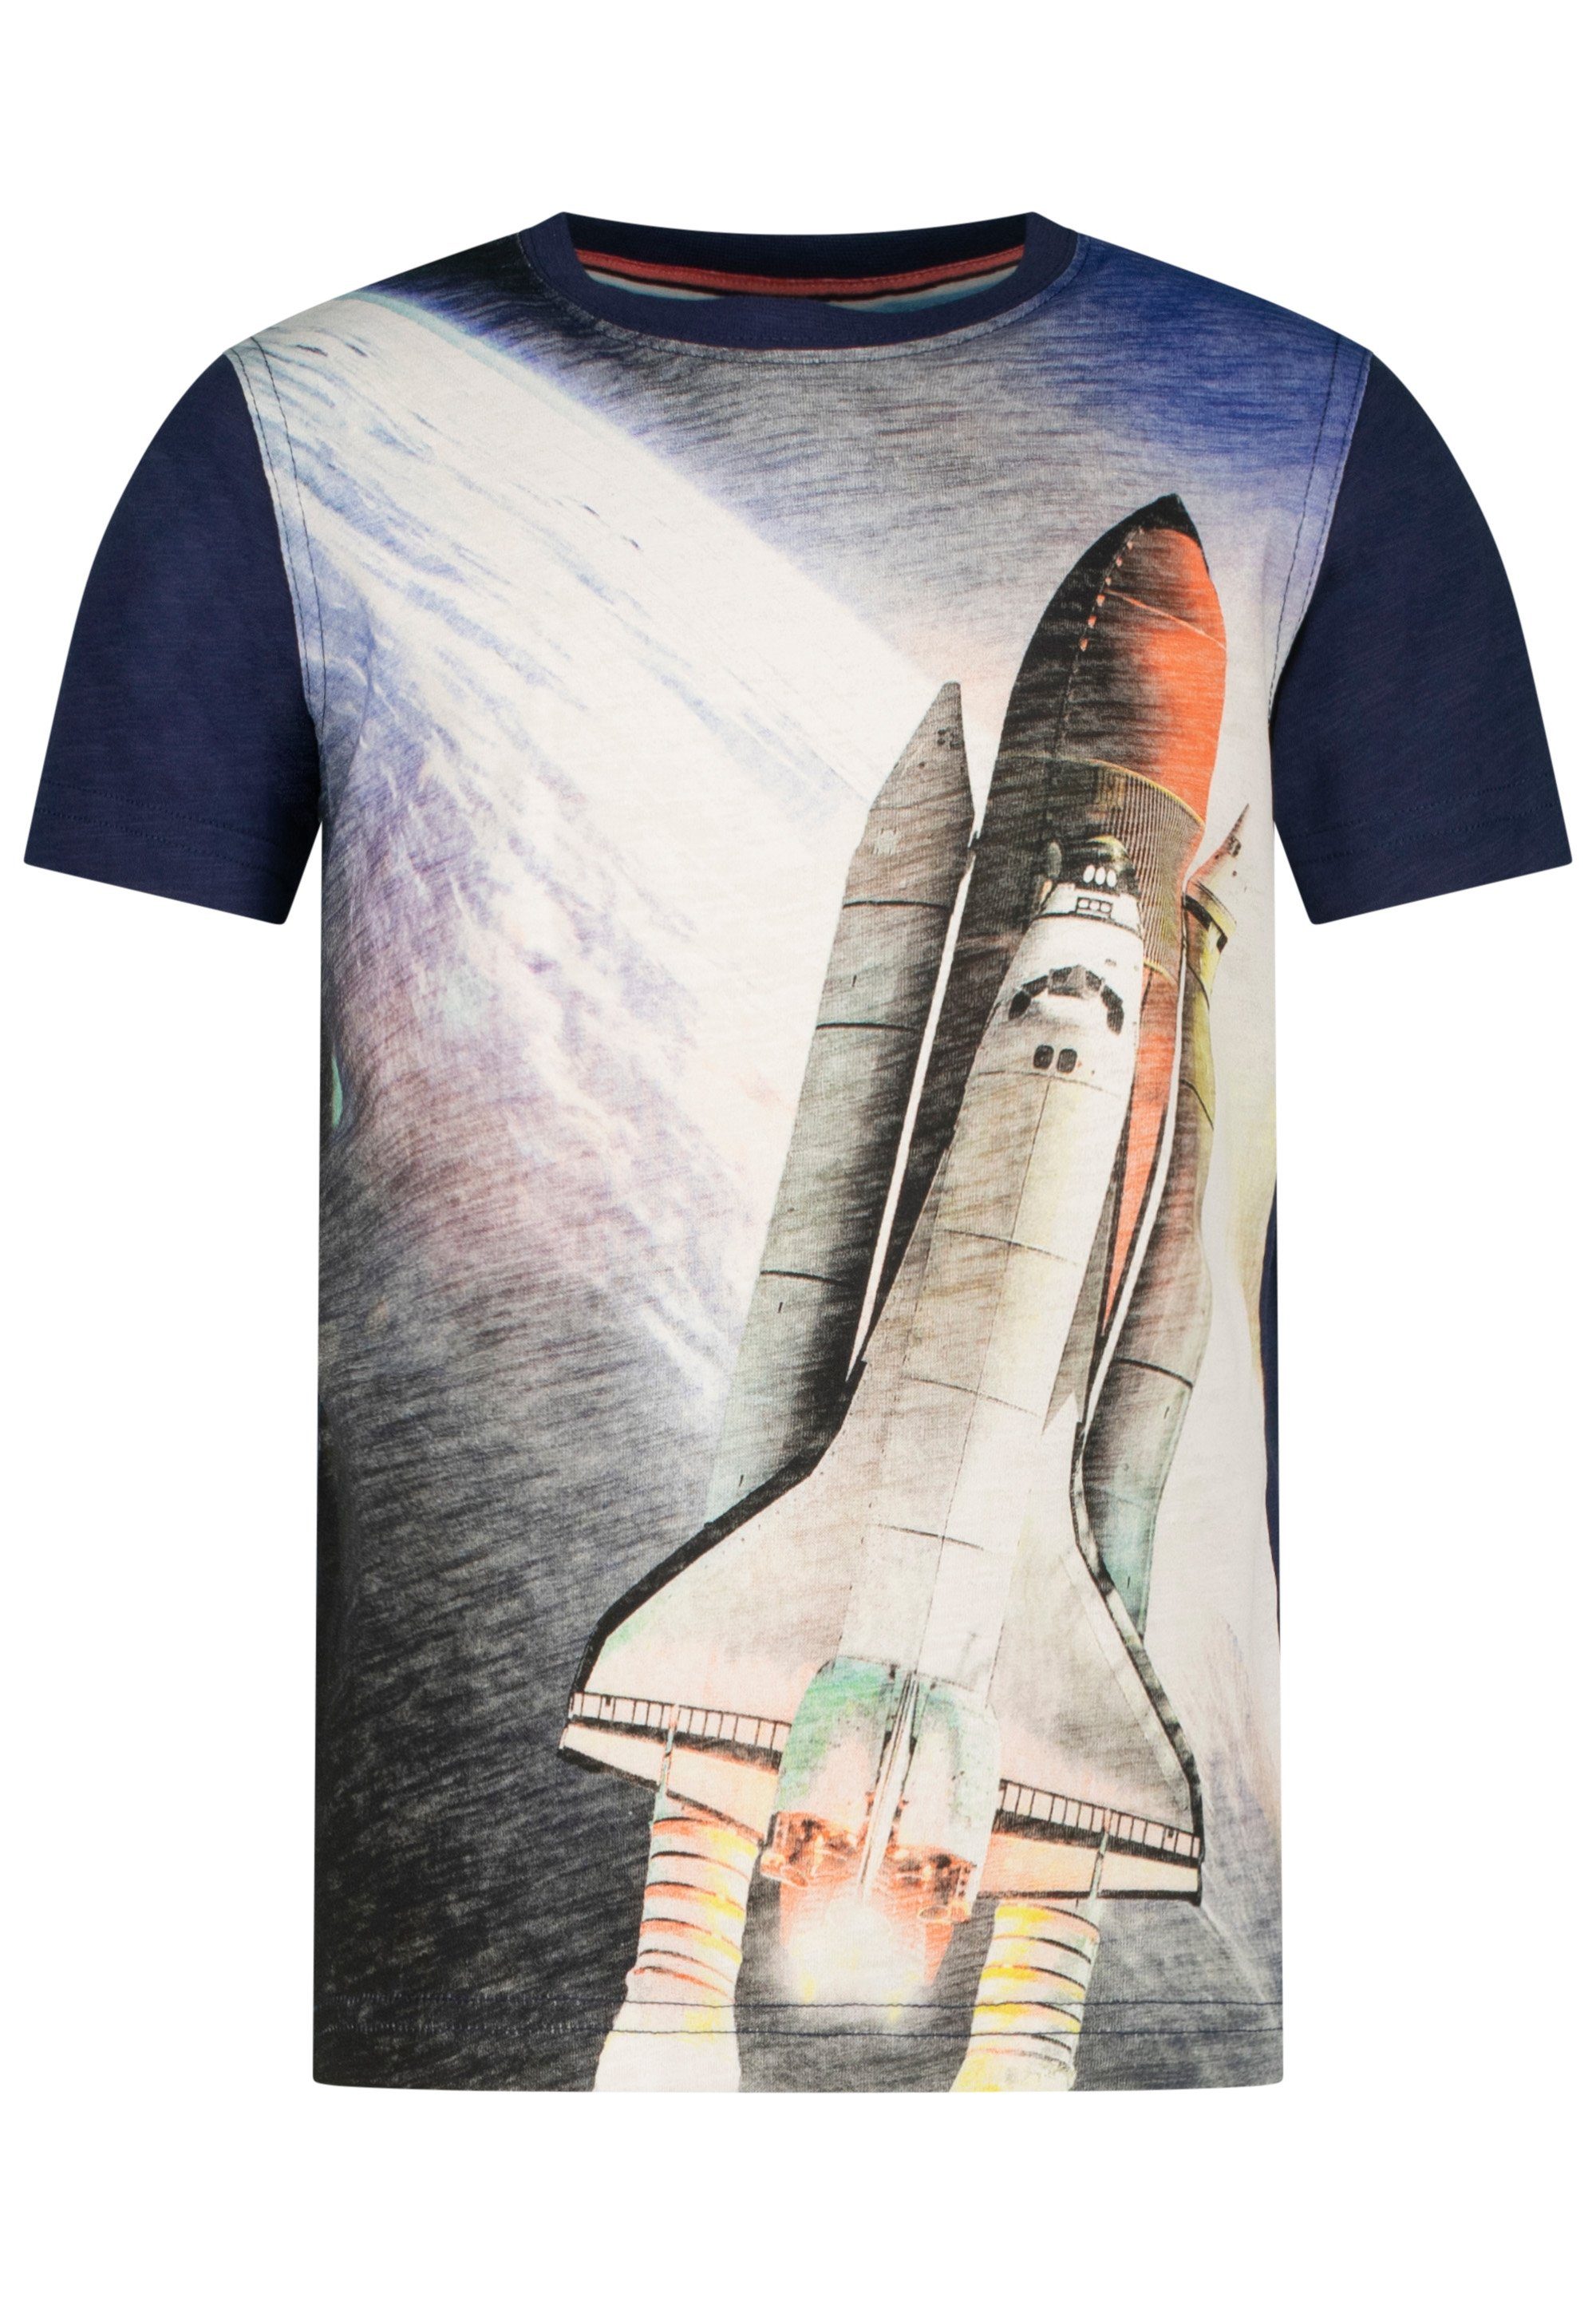 AND Shuttle mit T-Shirt dunkelblau (2-tlg) realistischem Space SALT PEPPER Fotodruck